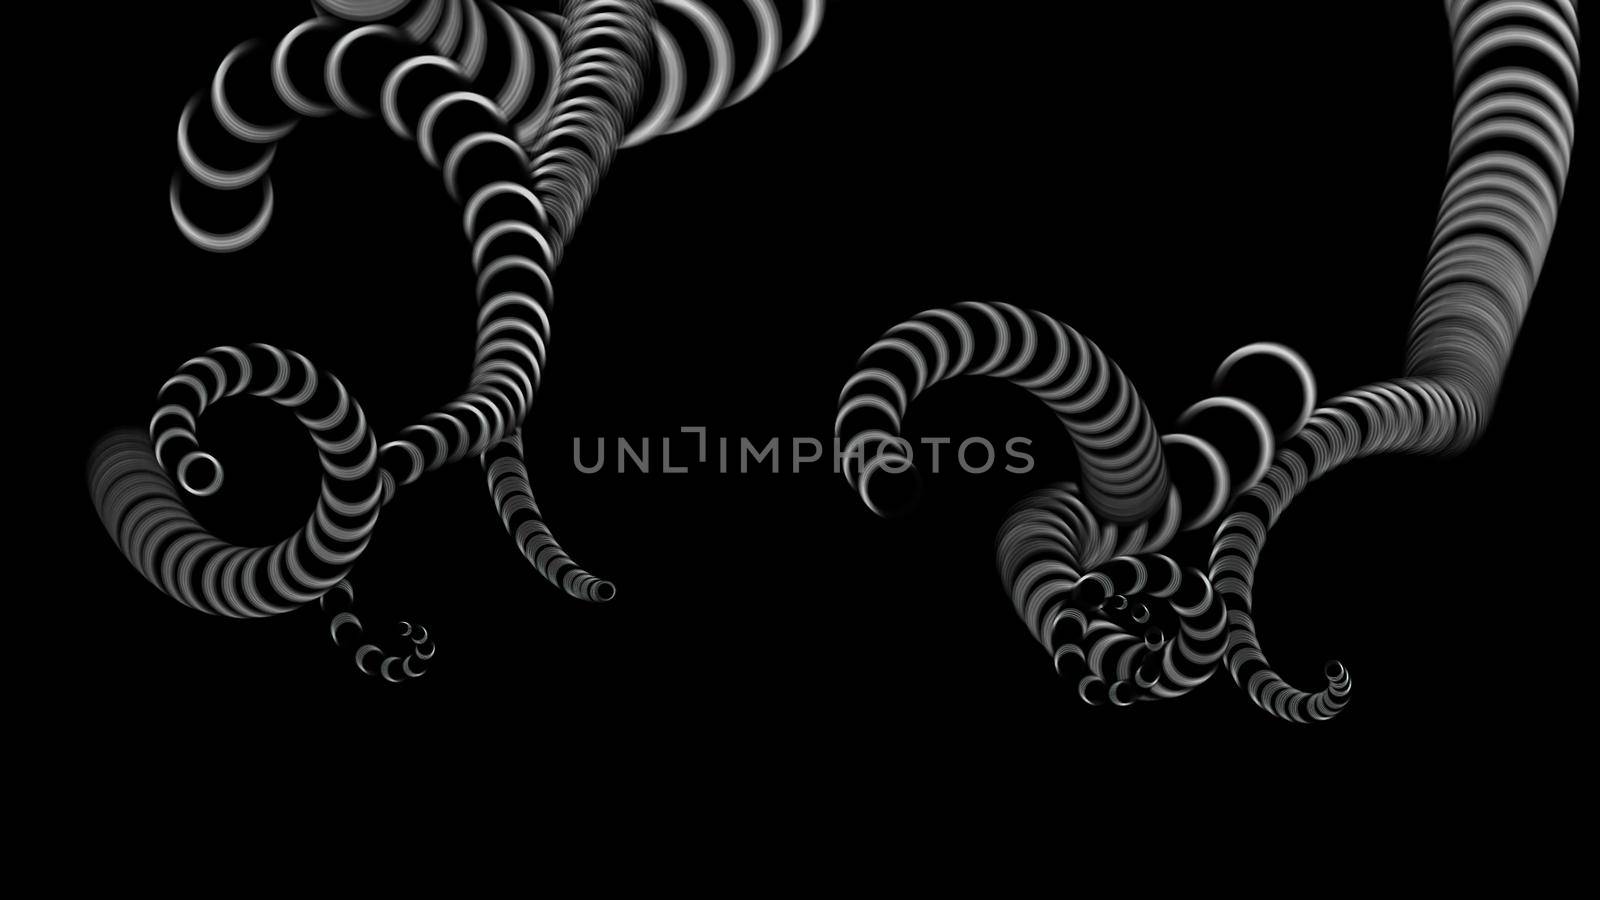 3d illustration - design of Octopus Tentacles on black background by vitanovski